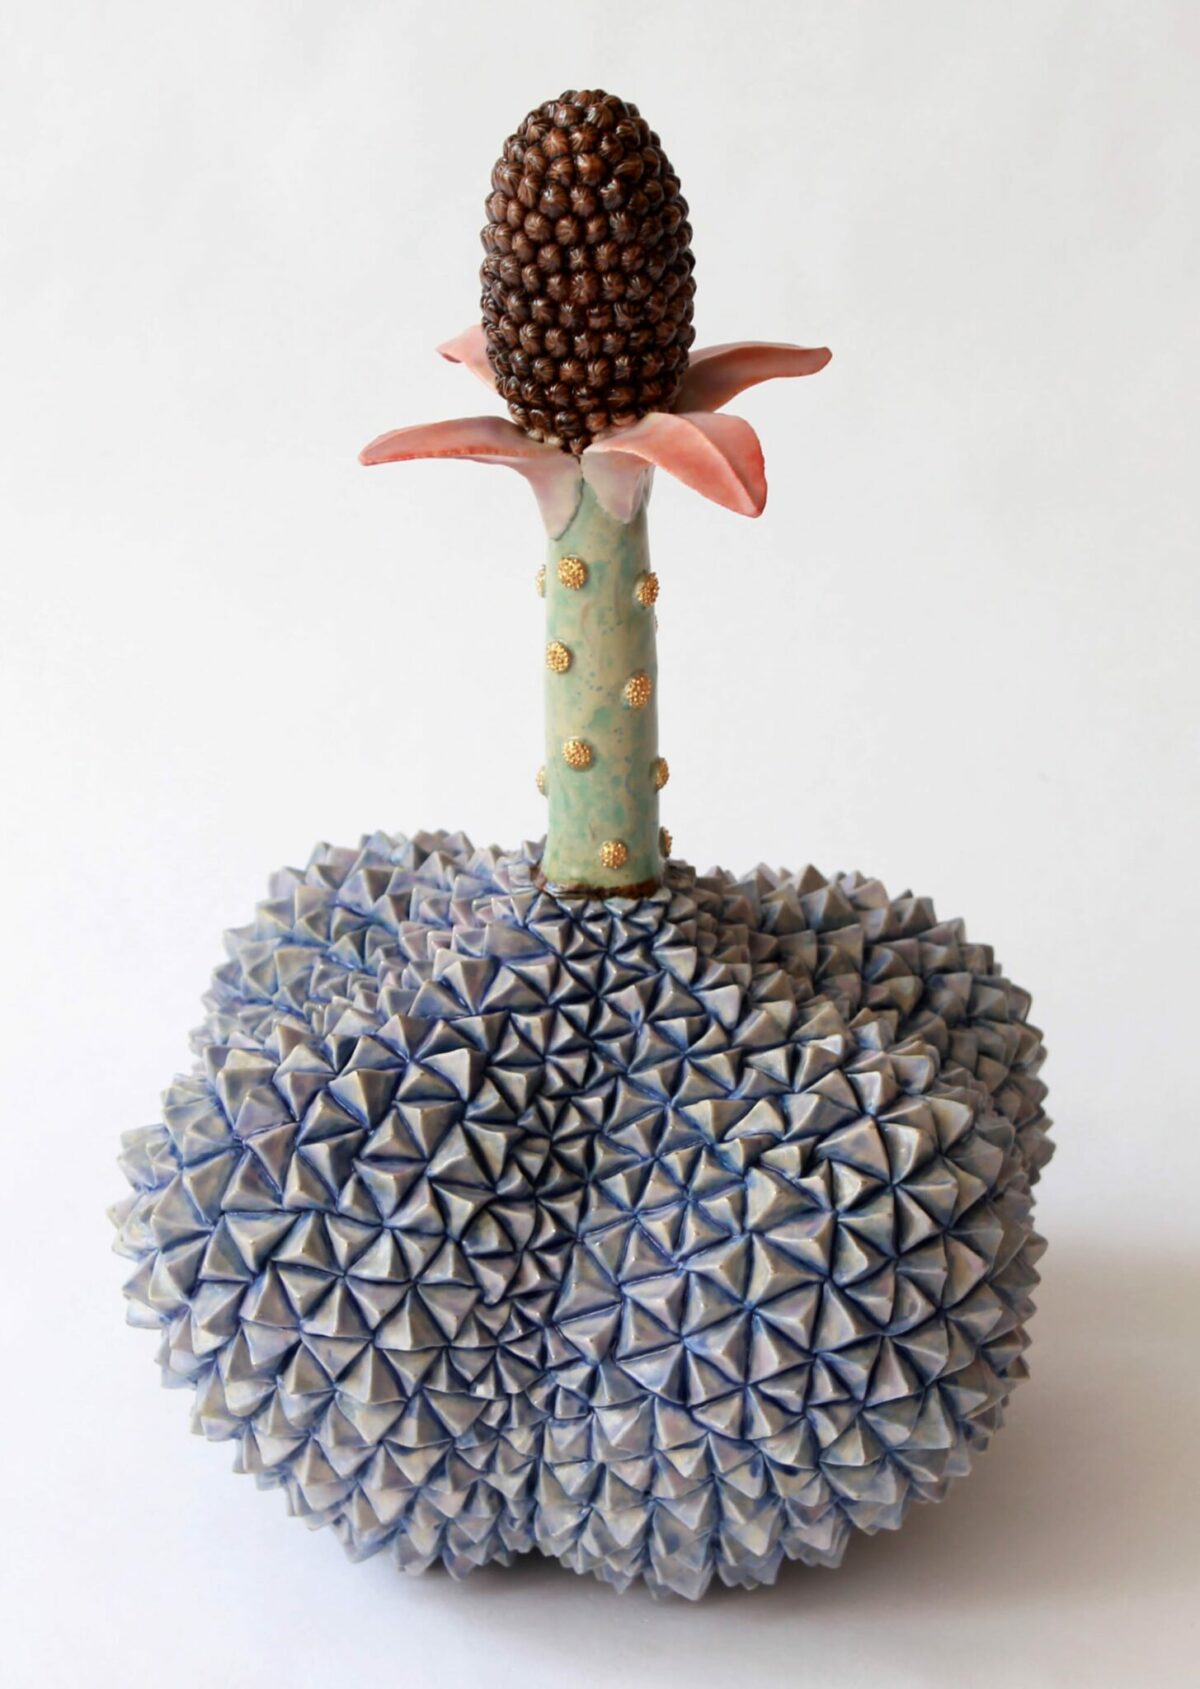 Otherworldly Fruits Fantastical Ceramic Sculptures By Kaori Kurihara 19